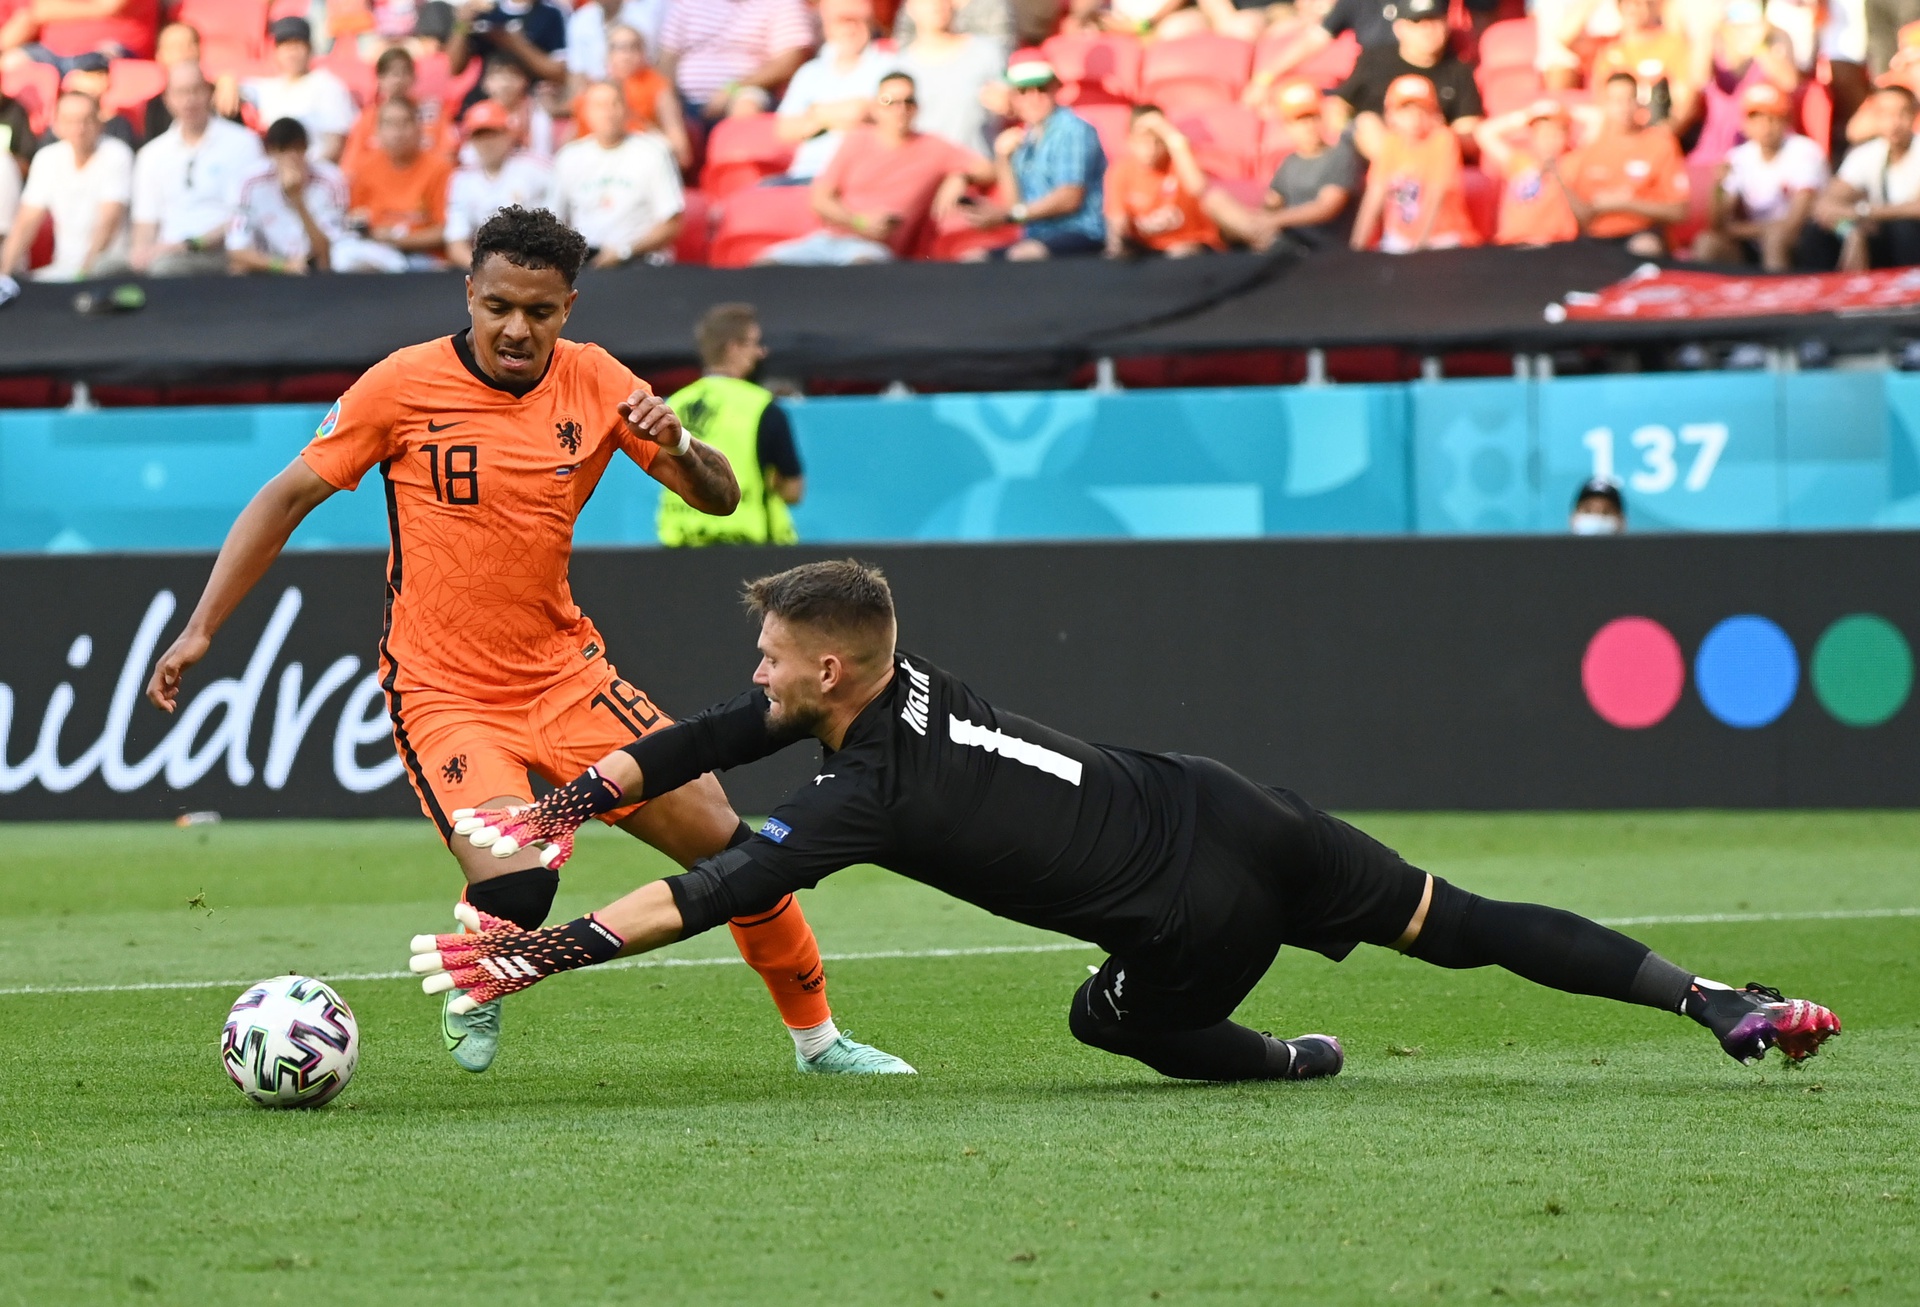 Tiền đạo Malen của Hà Lan bỏ lỡ cơ hội ghi bàn khi đối mặt với thủ môn Cộng hòa Czech